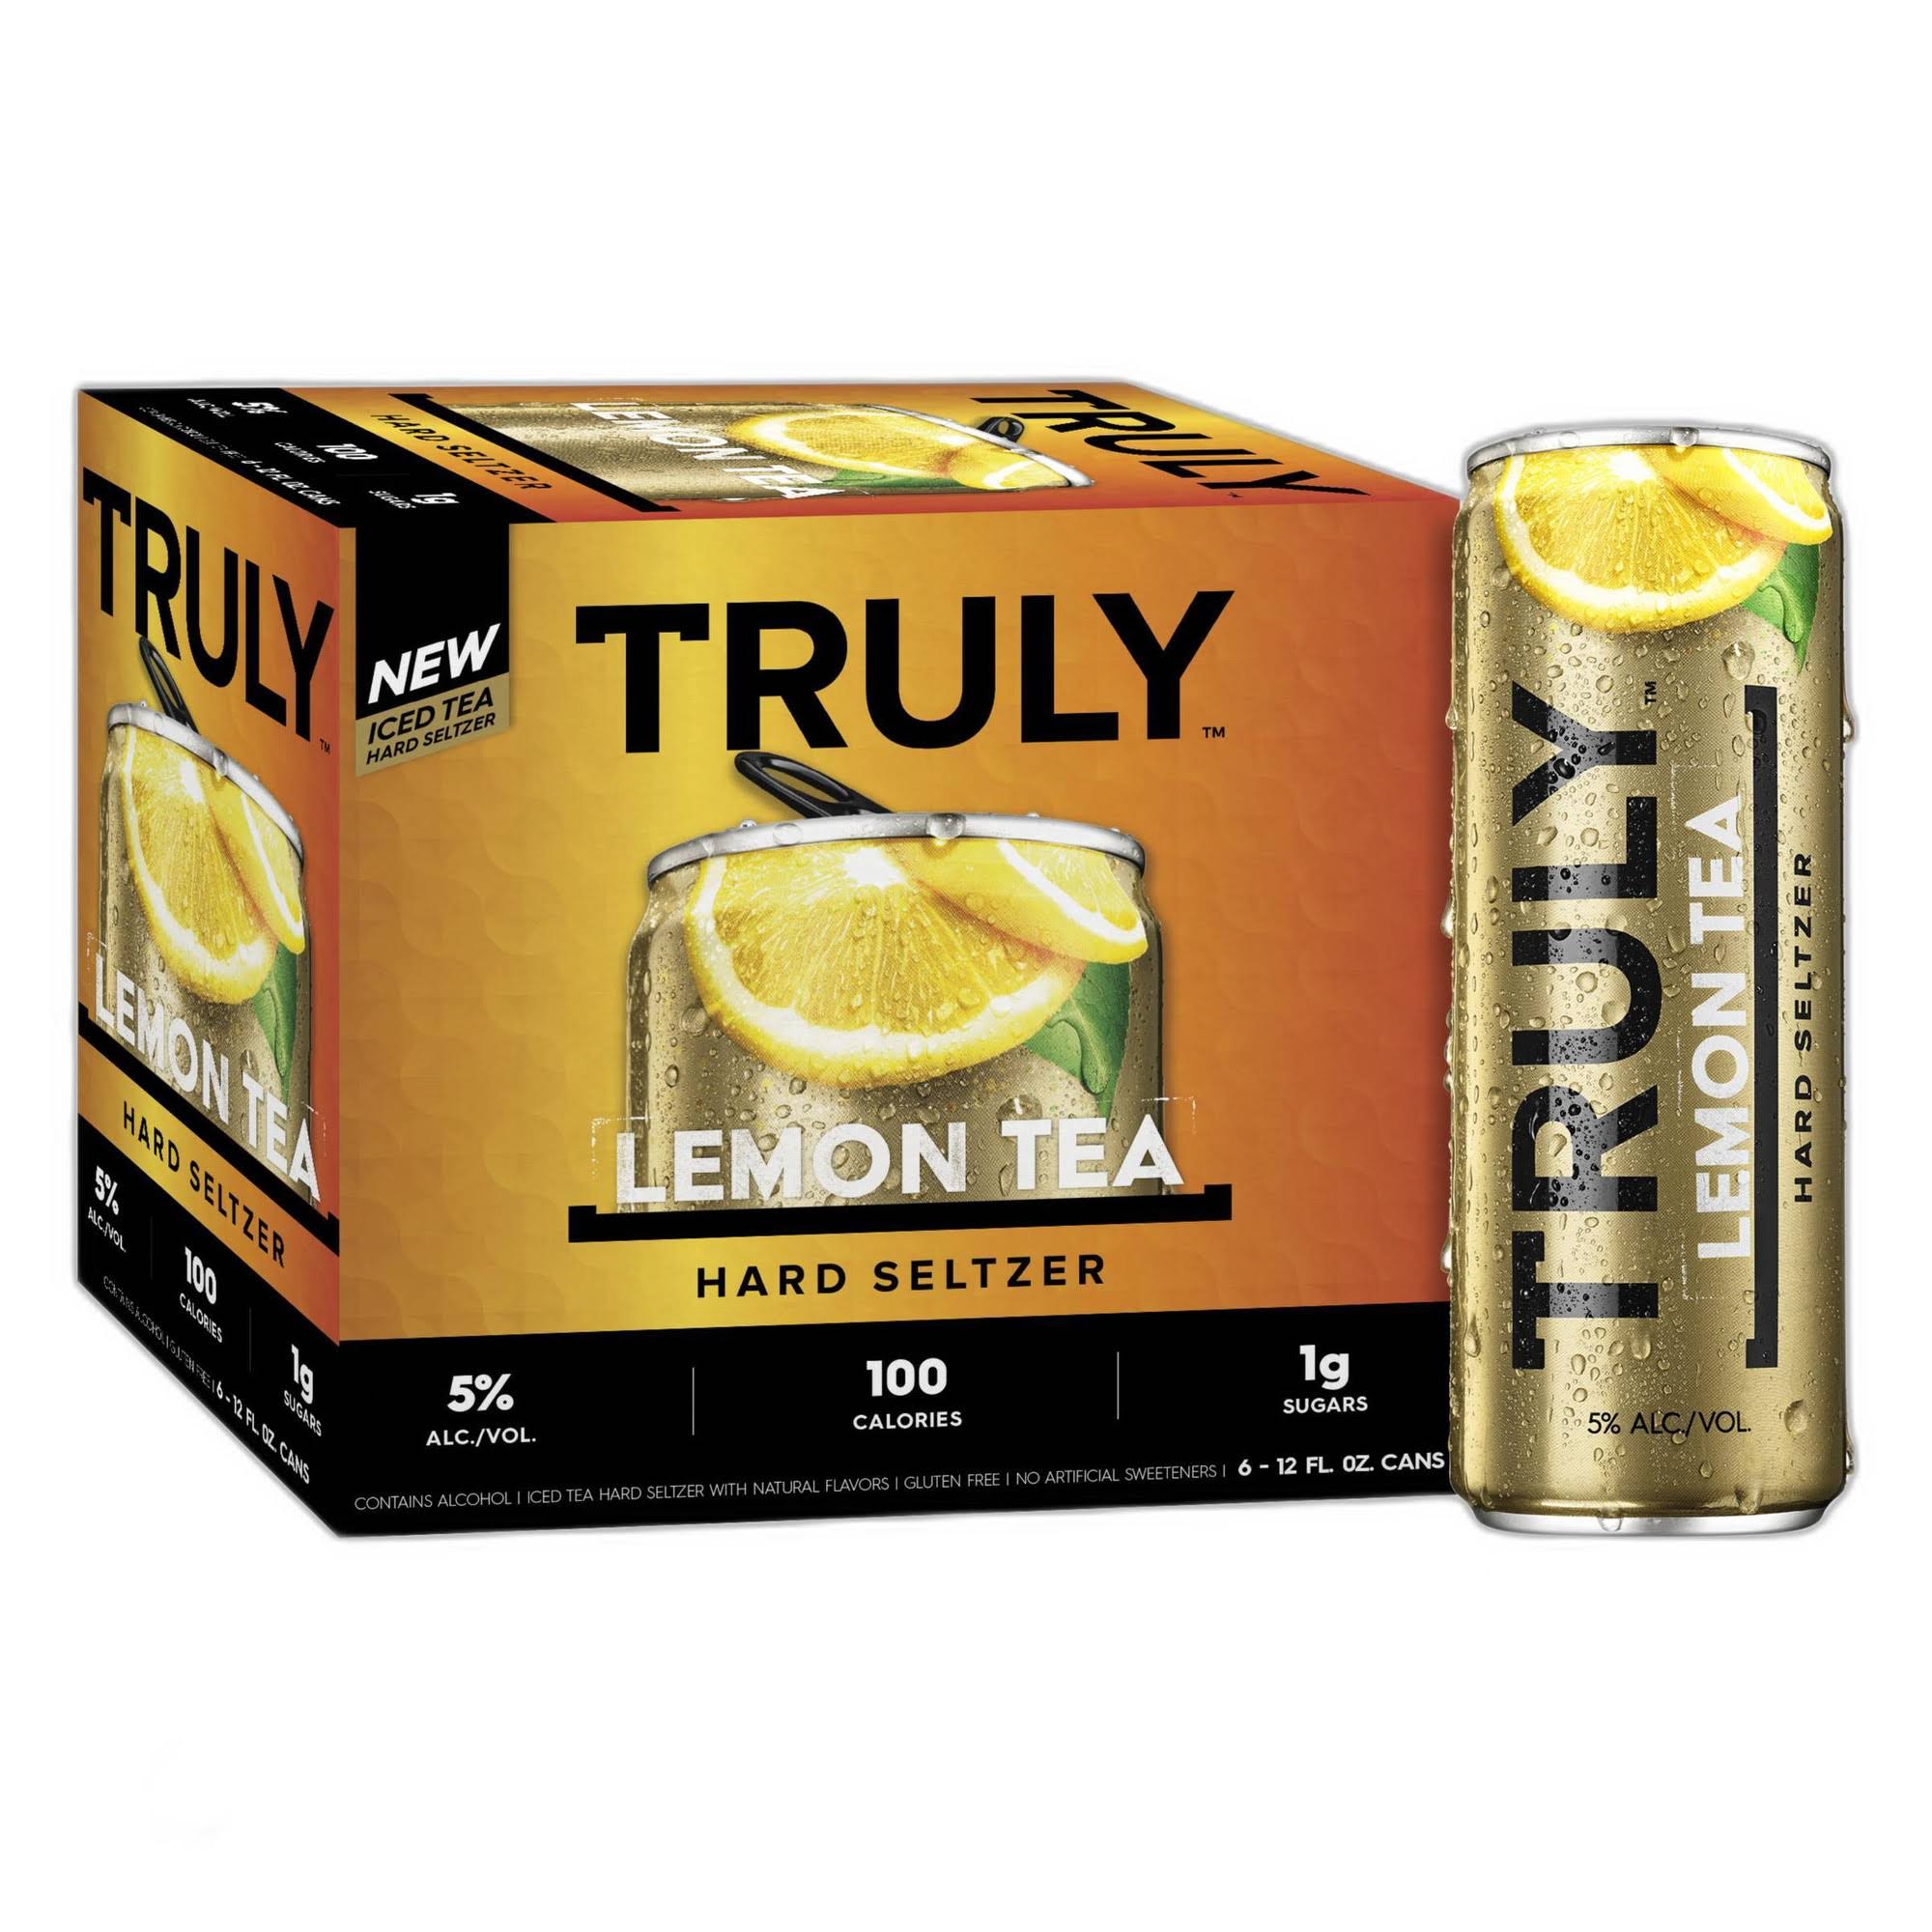 Truly Beer, Lemon Tea, Hard Seltzer - 6 pack, 12 fl oz cans